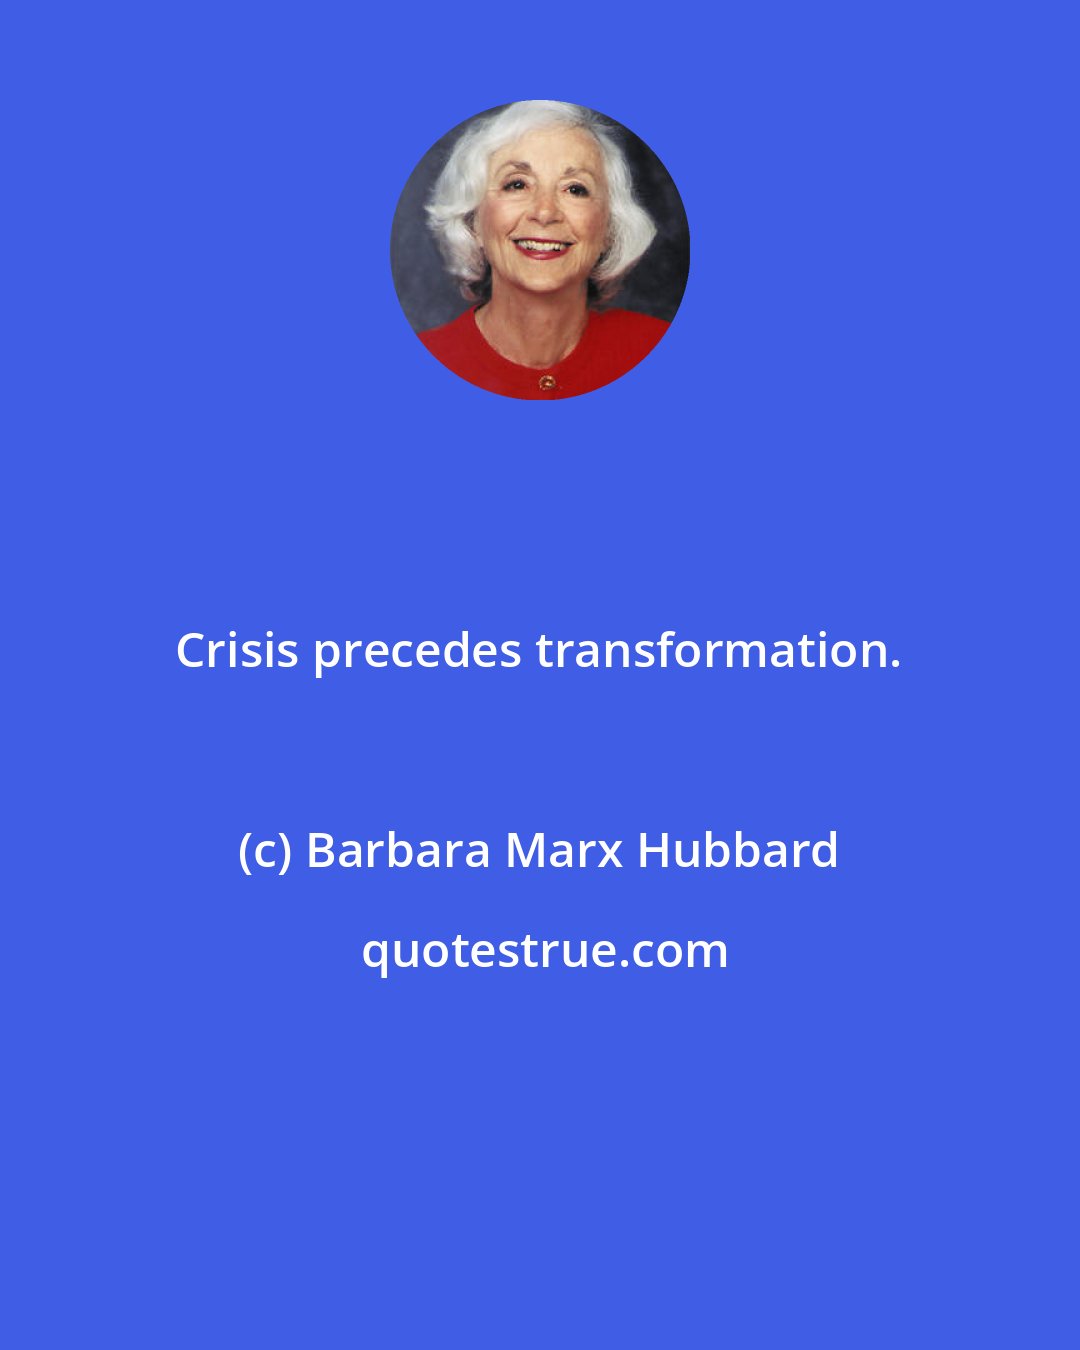 Barbara Marx Hubbard: Crisis precedes transformation.